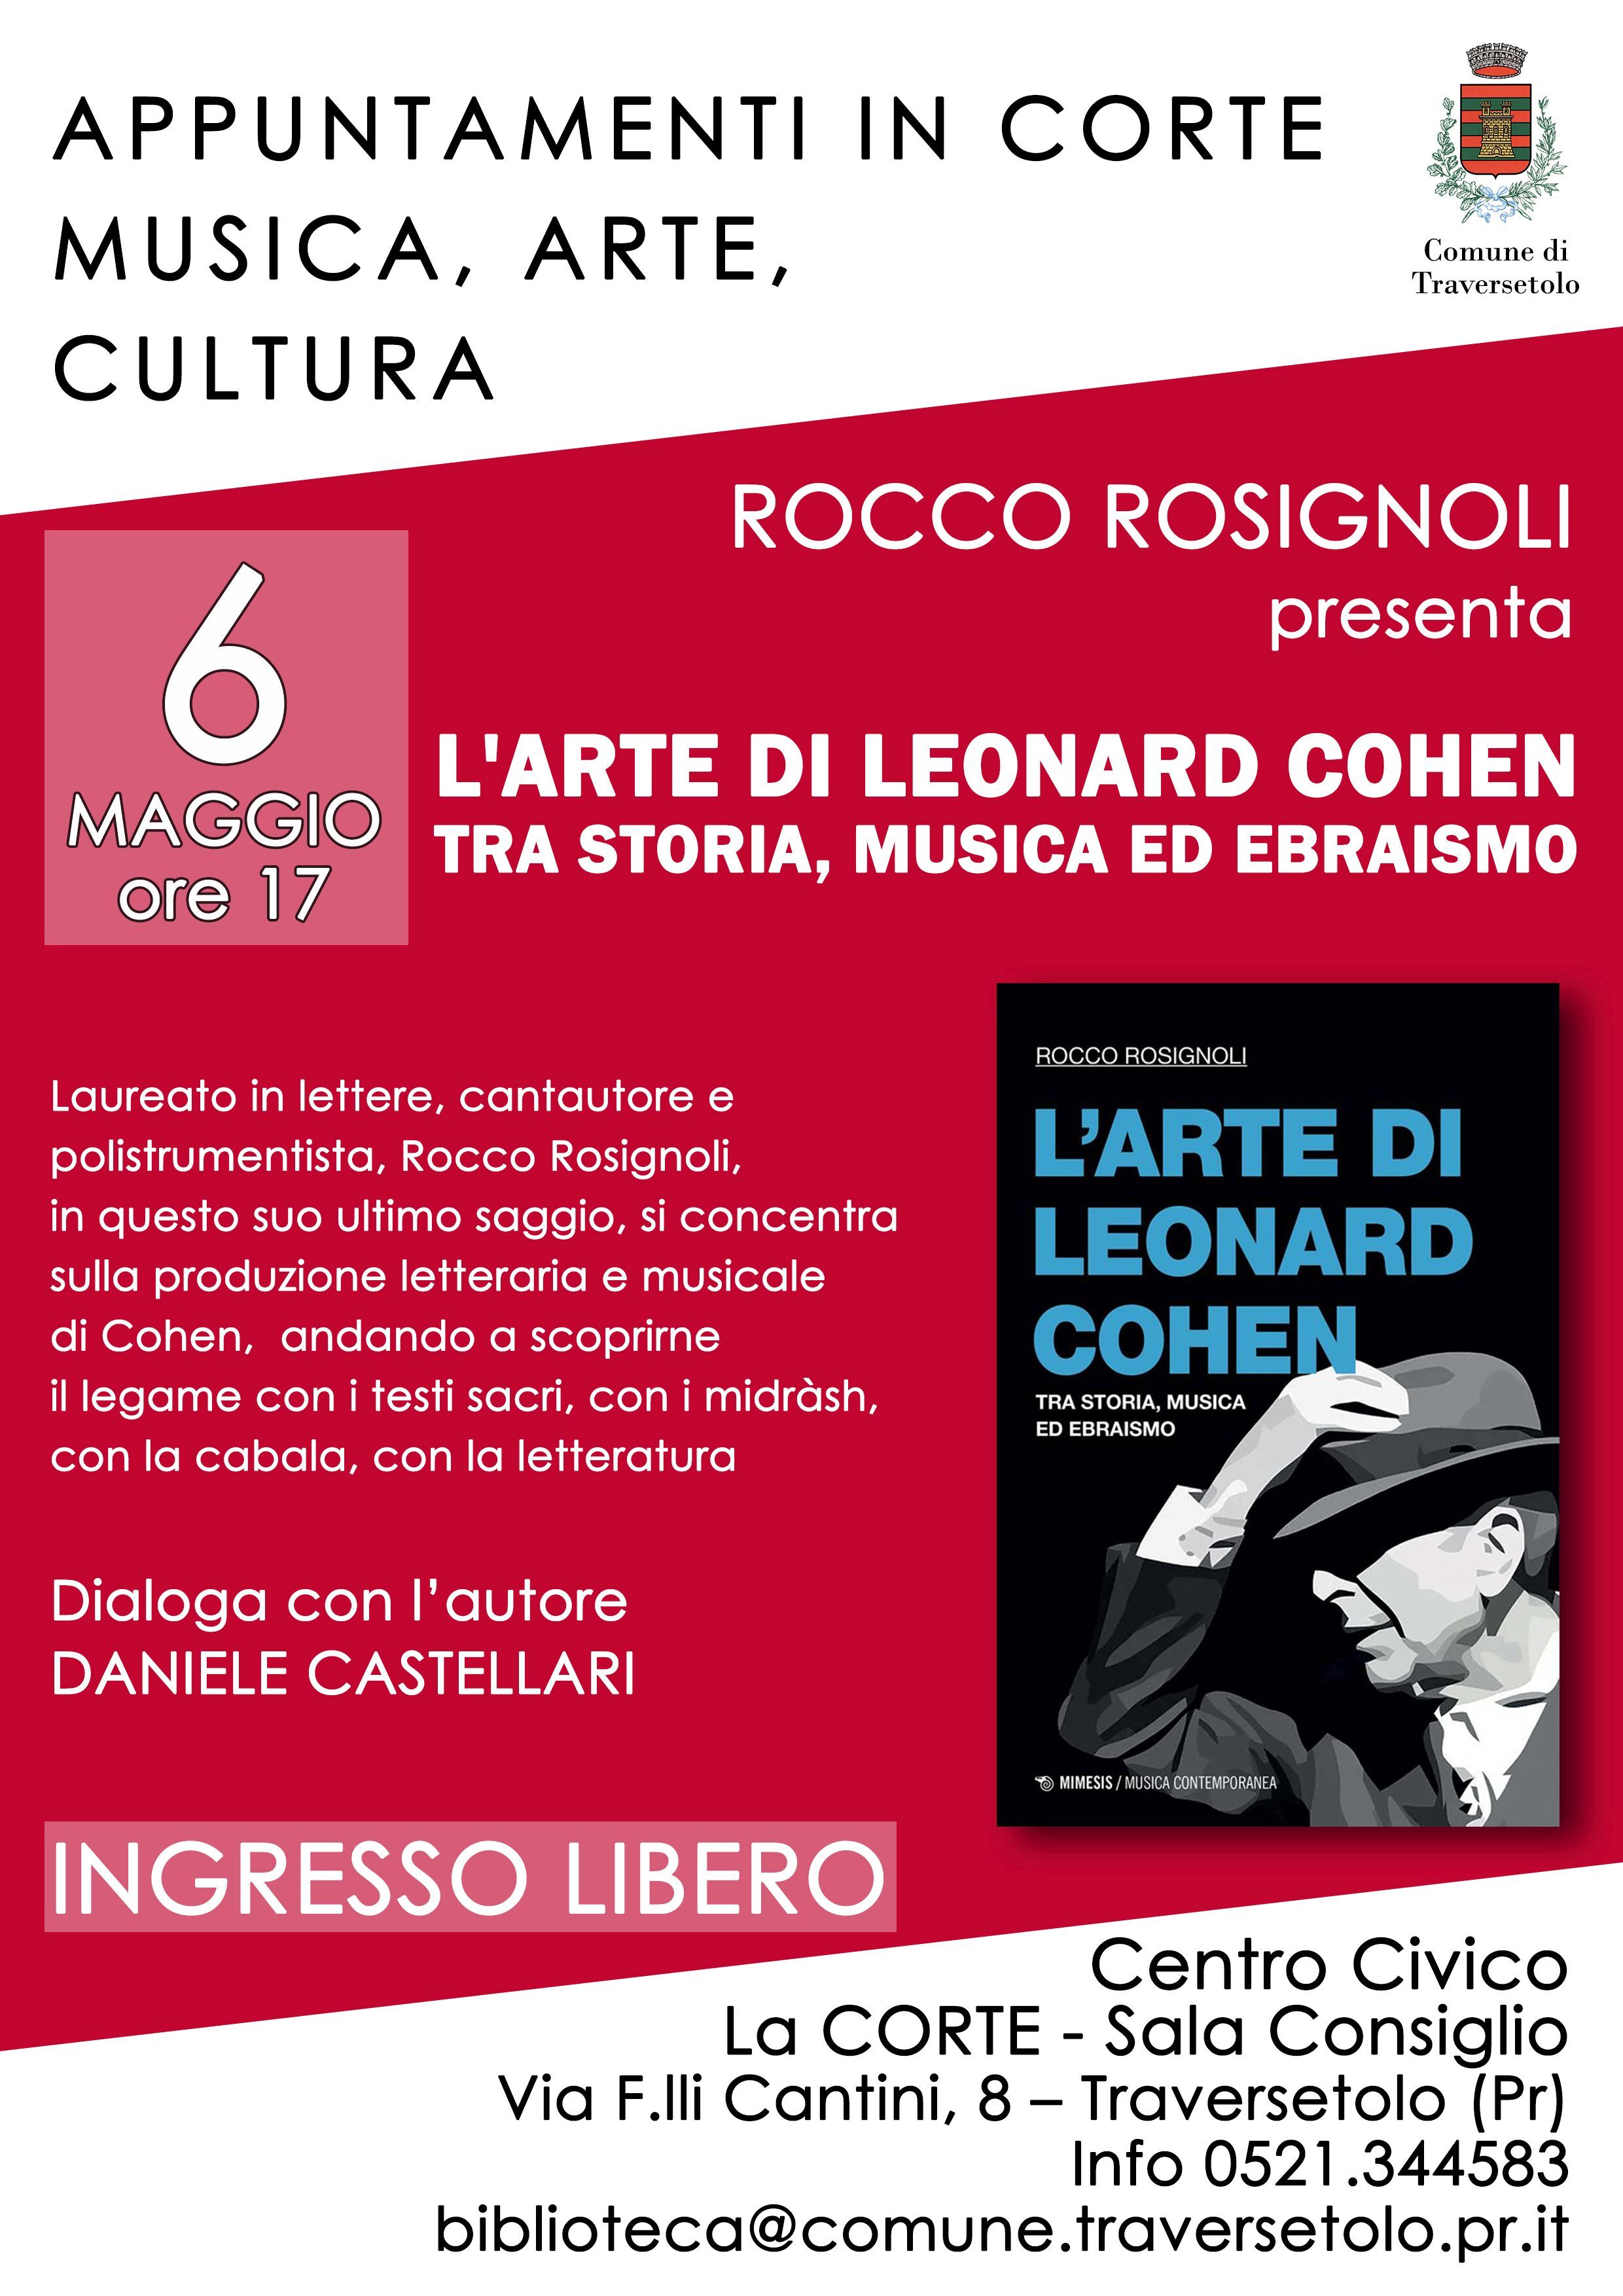 Traversetolo: Musica, arte, cultura in Corte: Rocco Rosignoli presenta il suo saggio su Leonard Cohen  In dialogo con Daniele Castellari